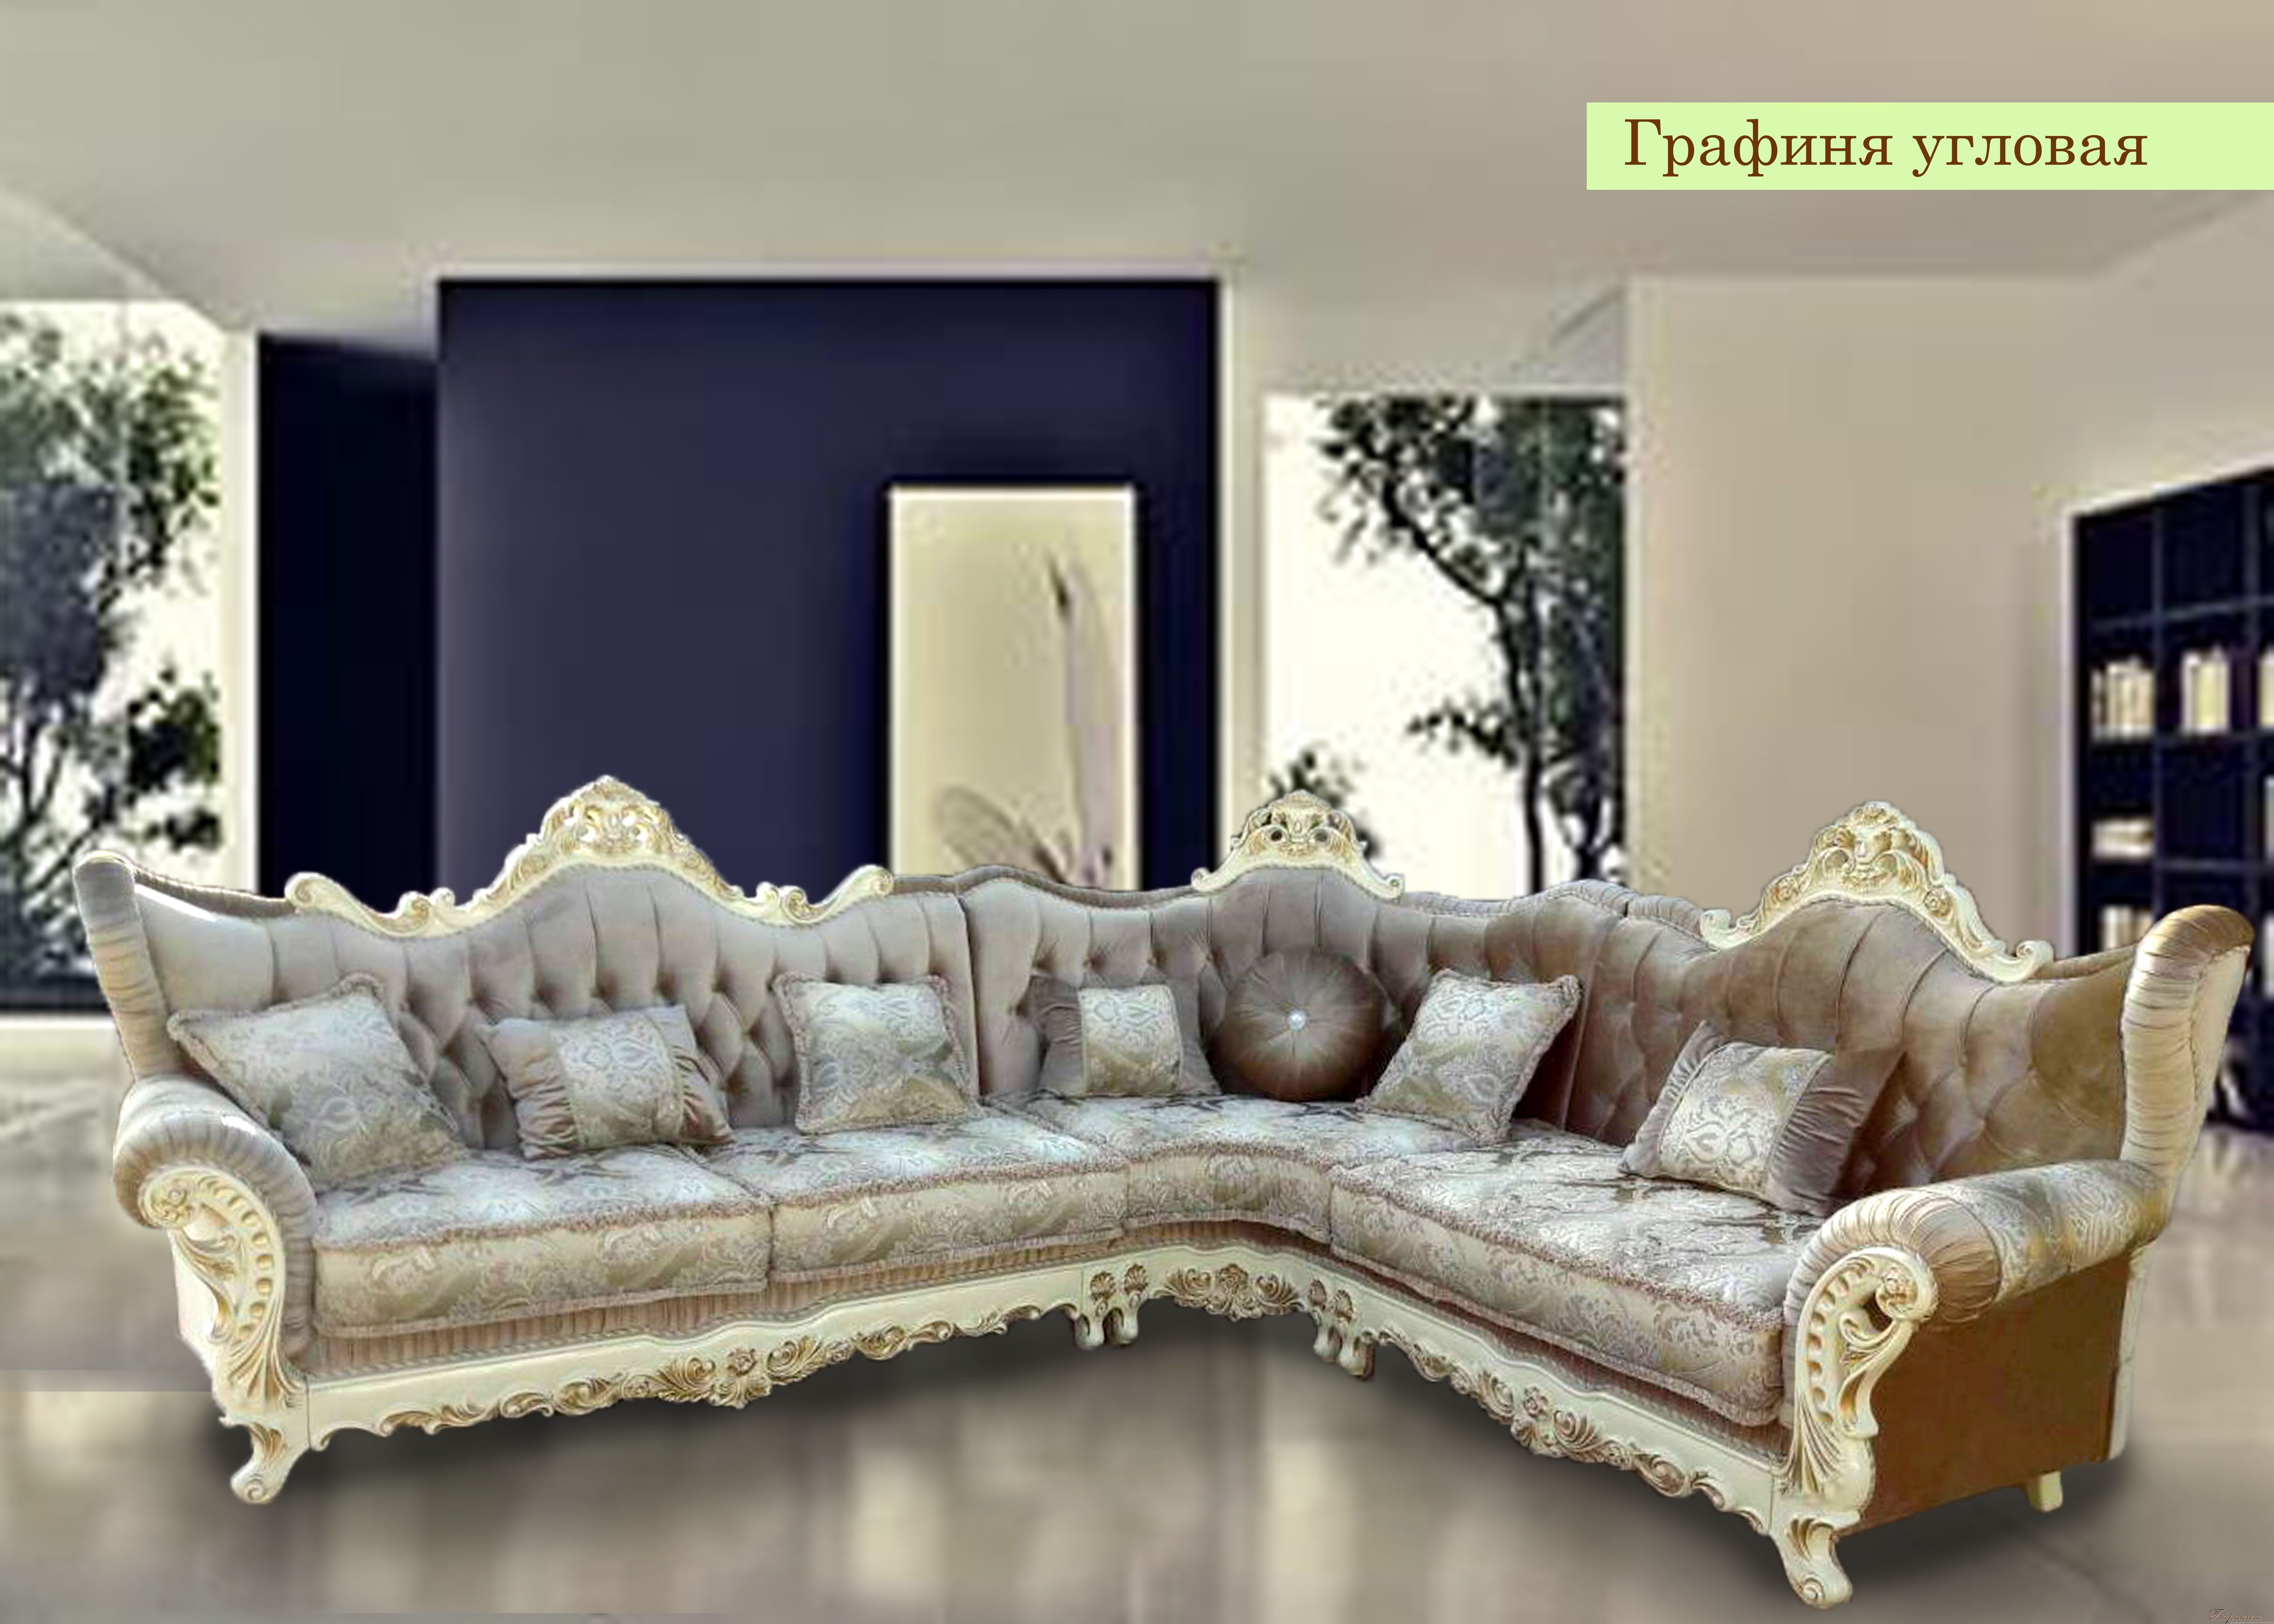 мягкая мебель дагестанского производства